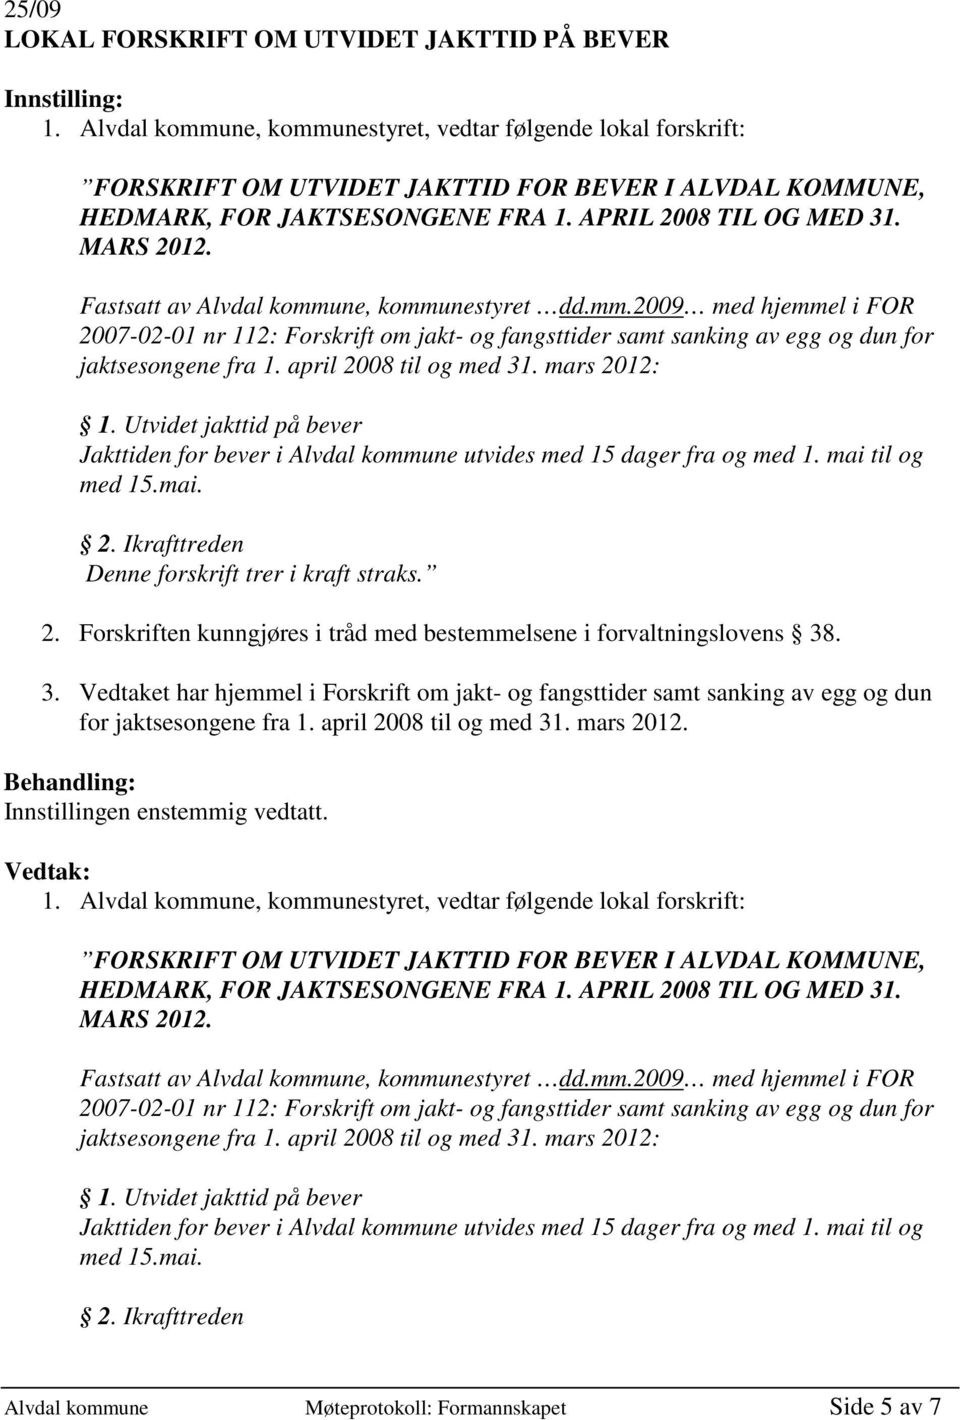 Fastsatt av Alvdal kommune, kommunestyret dd.mm.2009 med hjemmel i FOR 2007-02-01 nr 112: Forskrift om jakt- og fangsttider samt sanking av egg og dun for jaktsesongene fra 1.